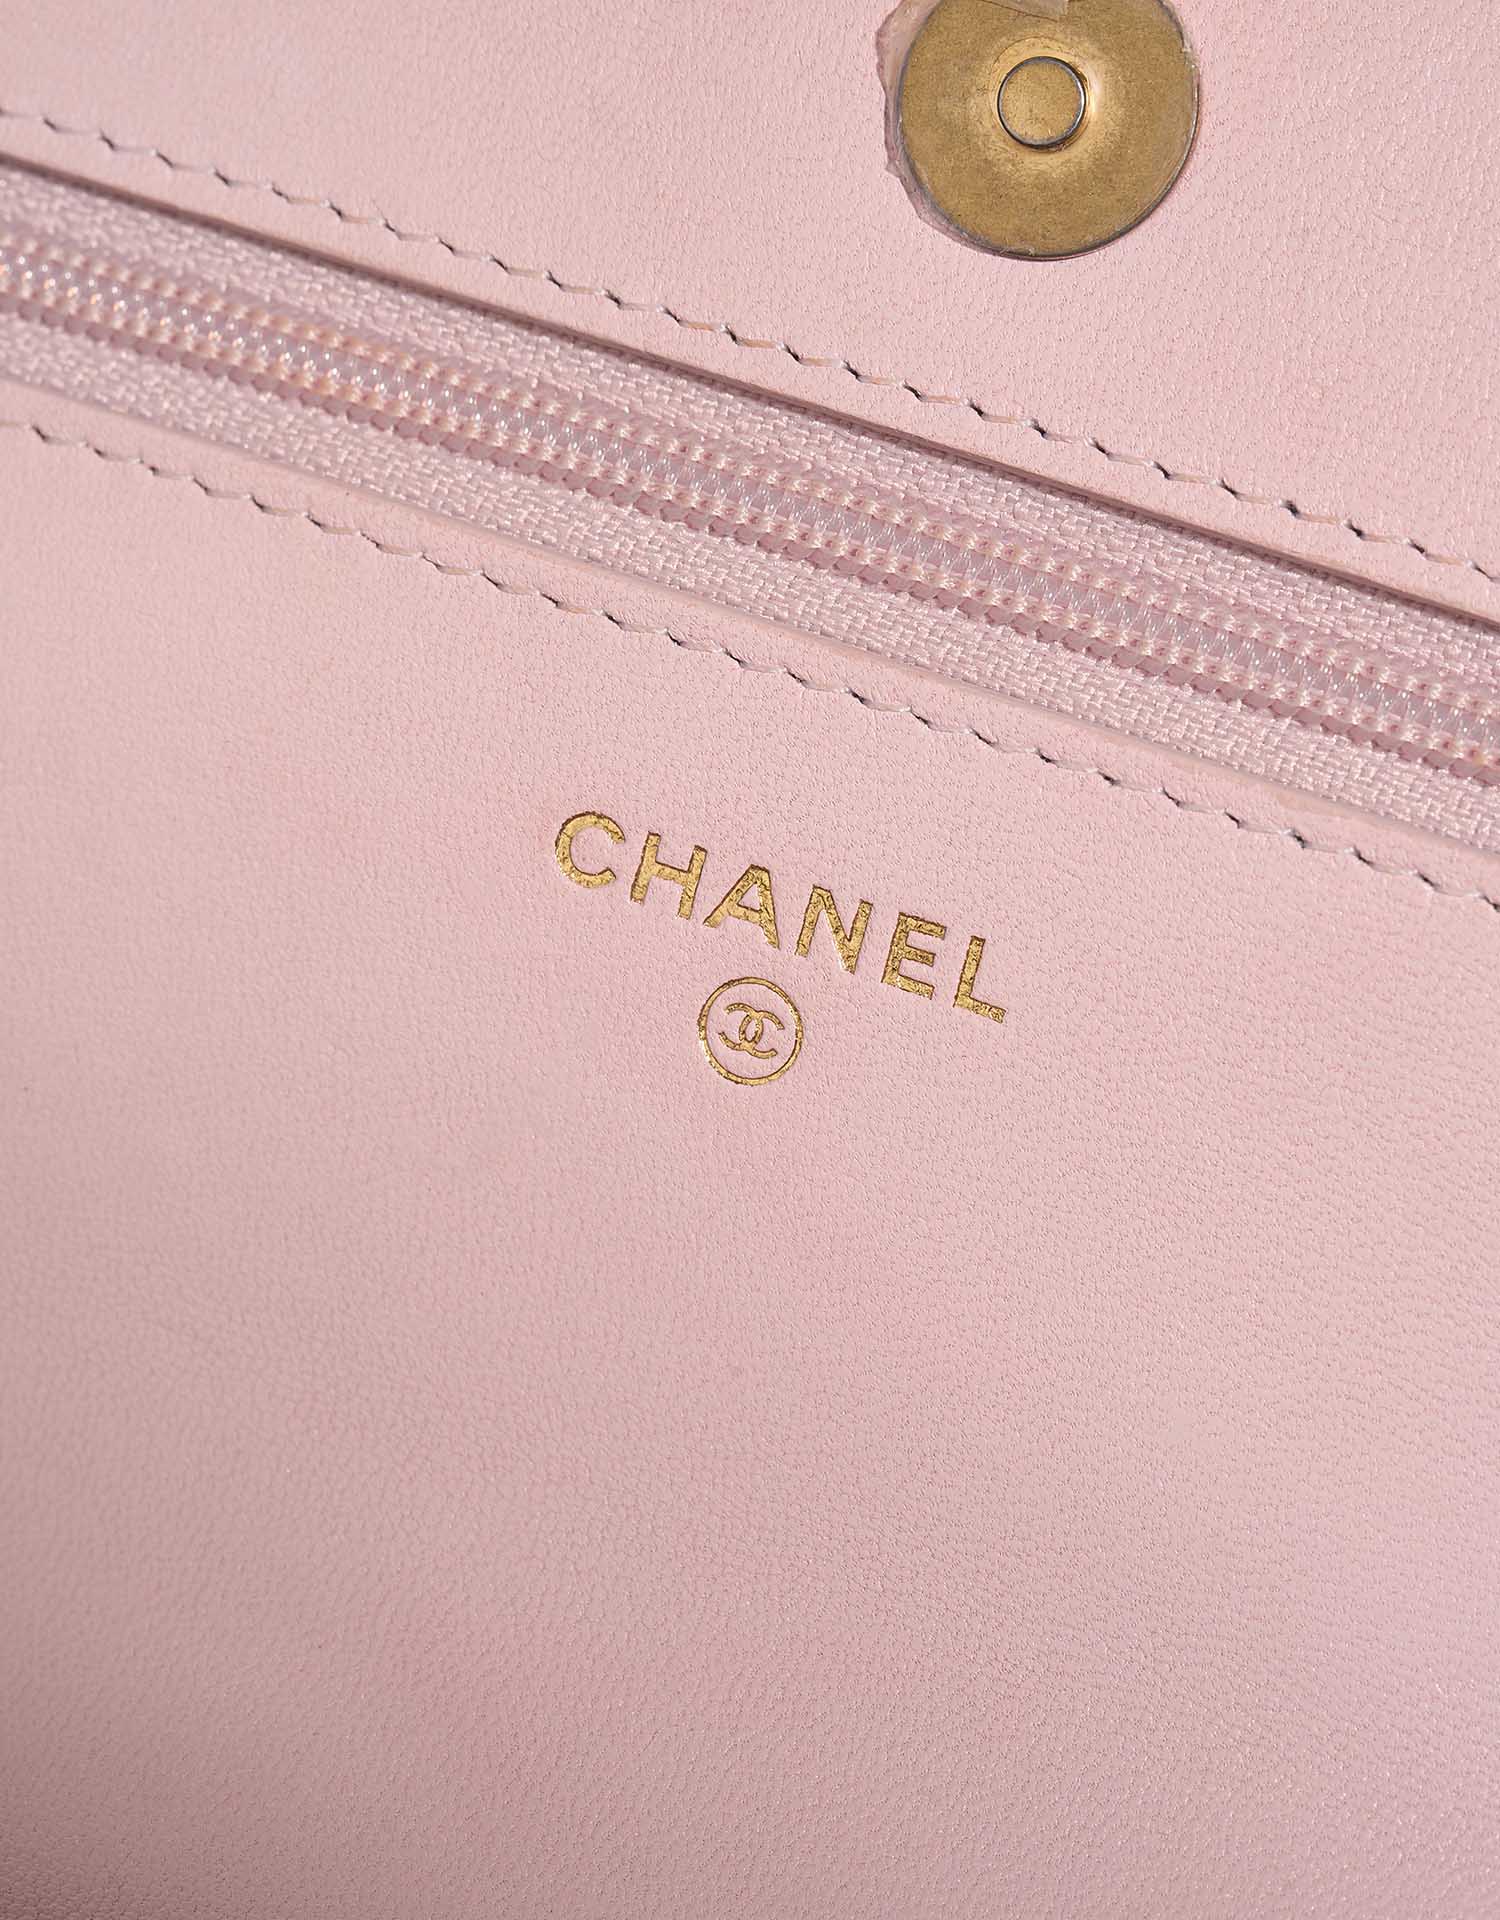 Chanel 19 Walletonchain Lightpink Logo | Verkaufen Sie Ihre Designer-Tasche auf Saclab.com